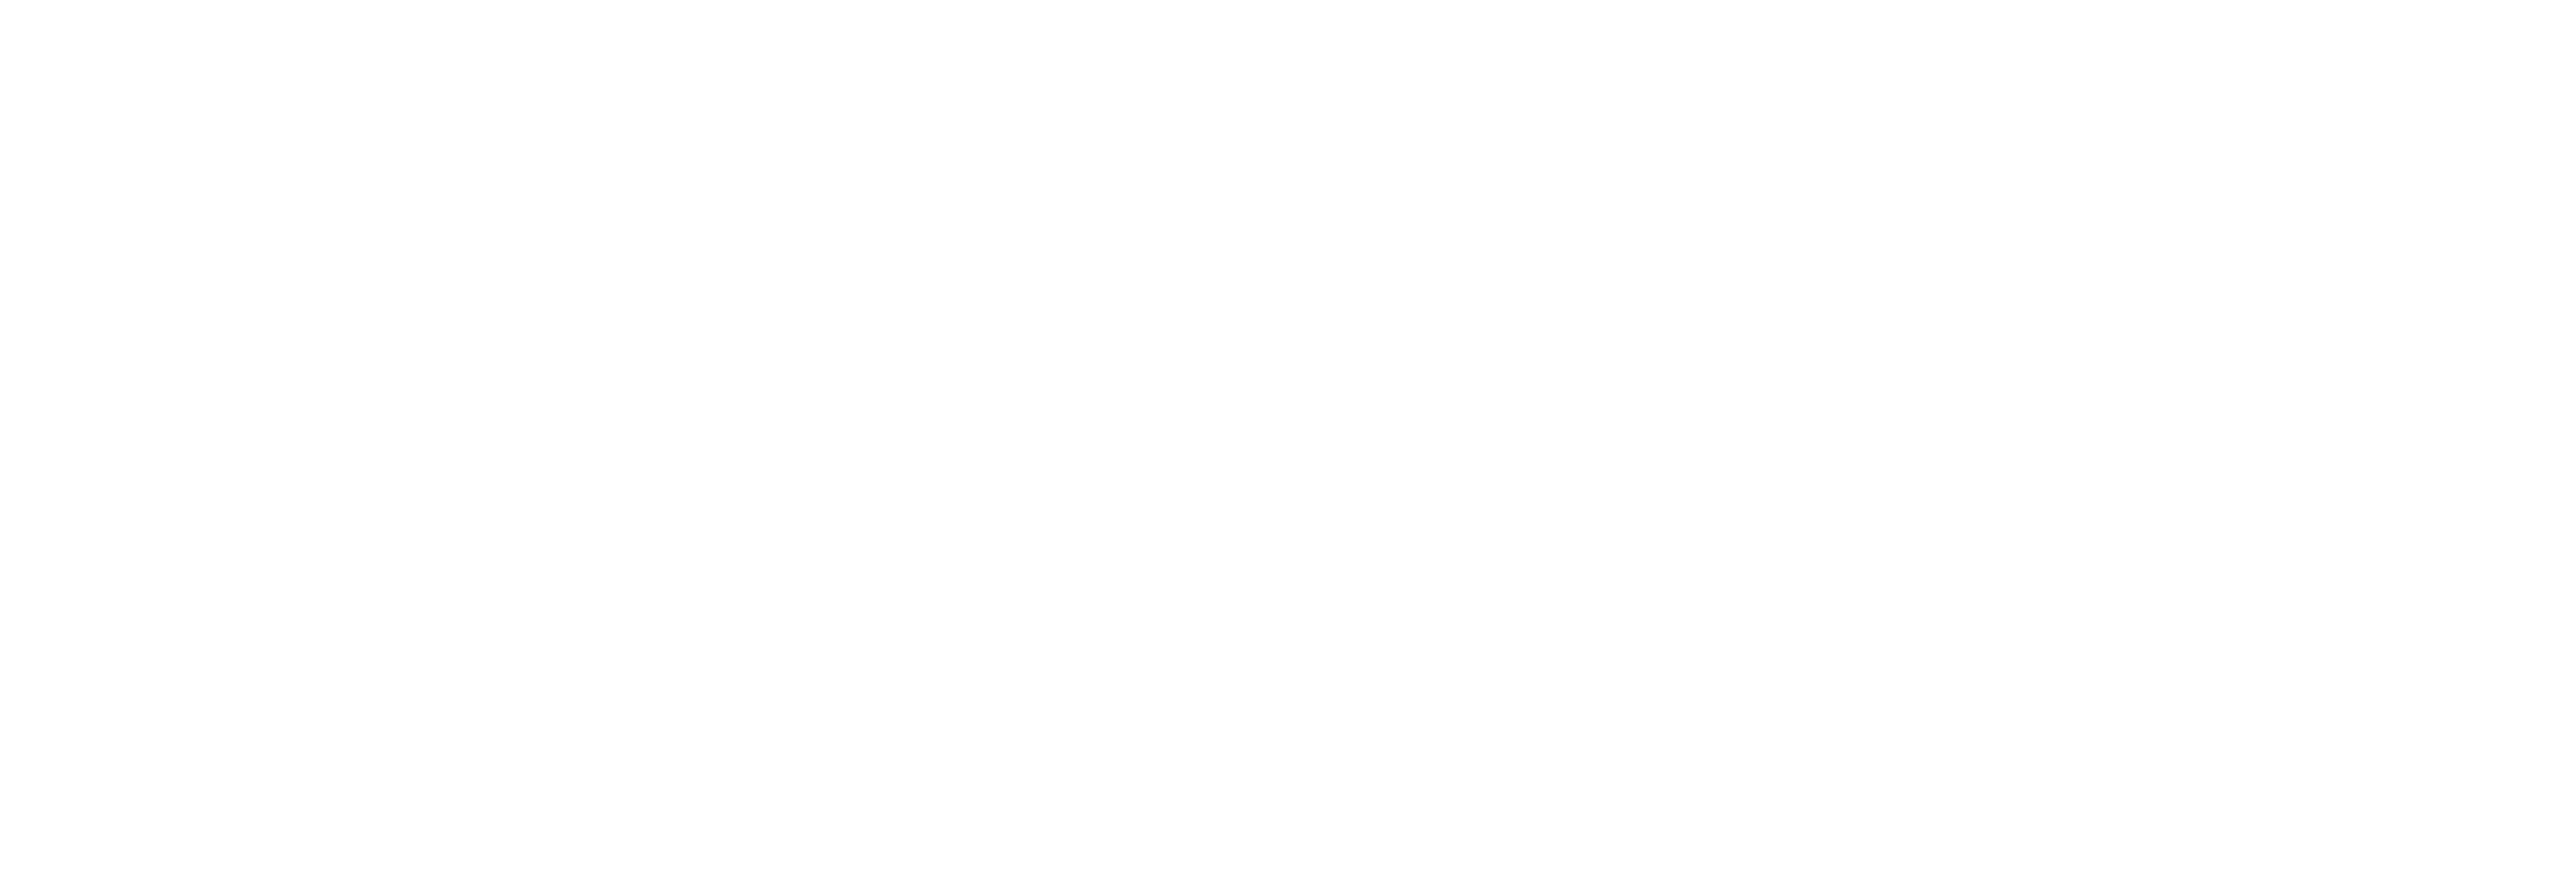 Logo Bottecchia blanc